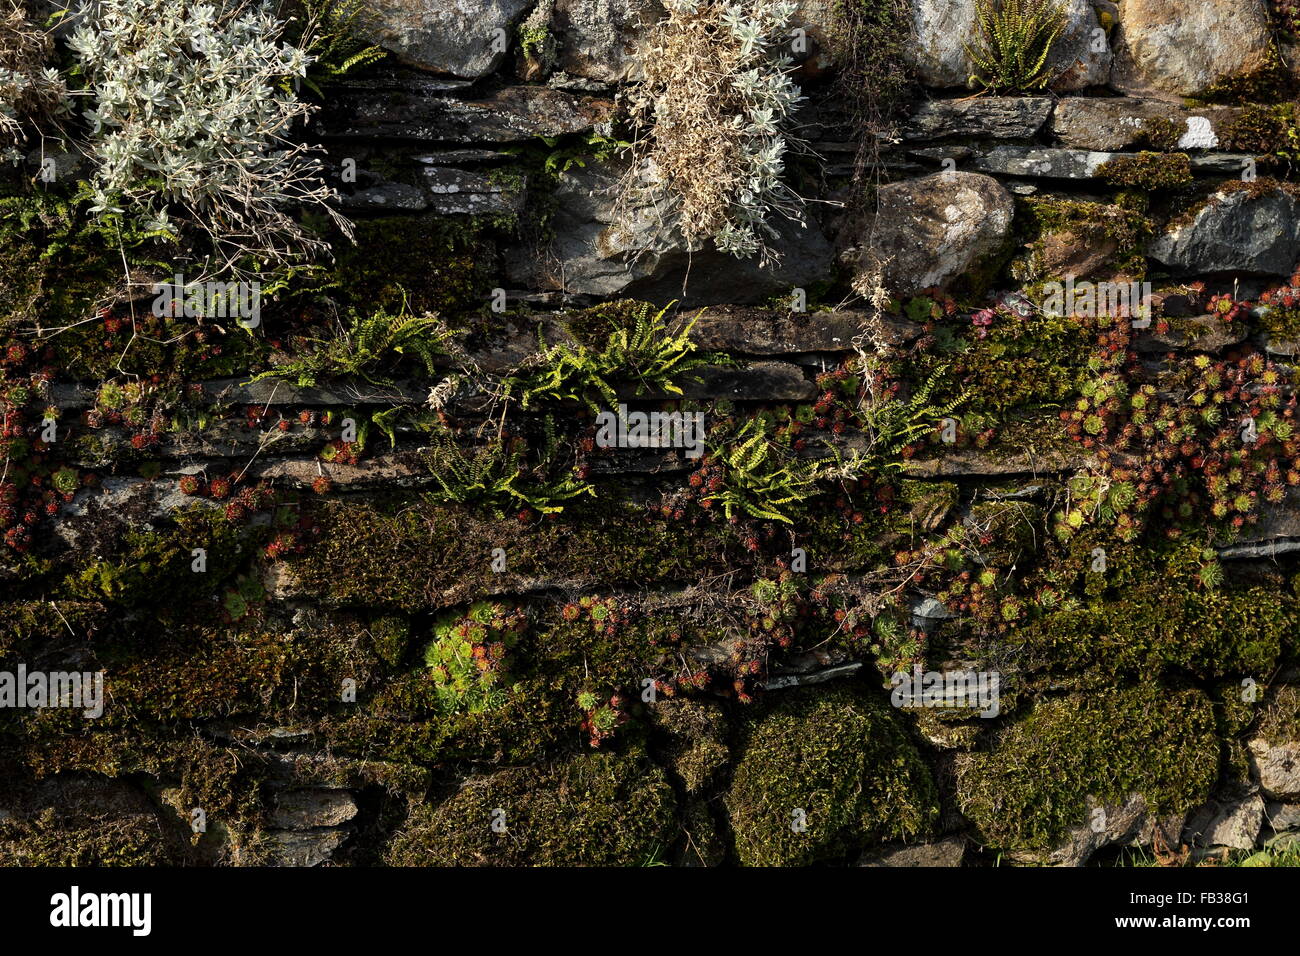 Ardesia pietra secca parete ricoperta con muschio, licheni e piante alpine che mostra la natura a colonizzare l'uomo fatto ambiente. Foto Stock